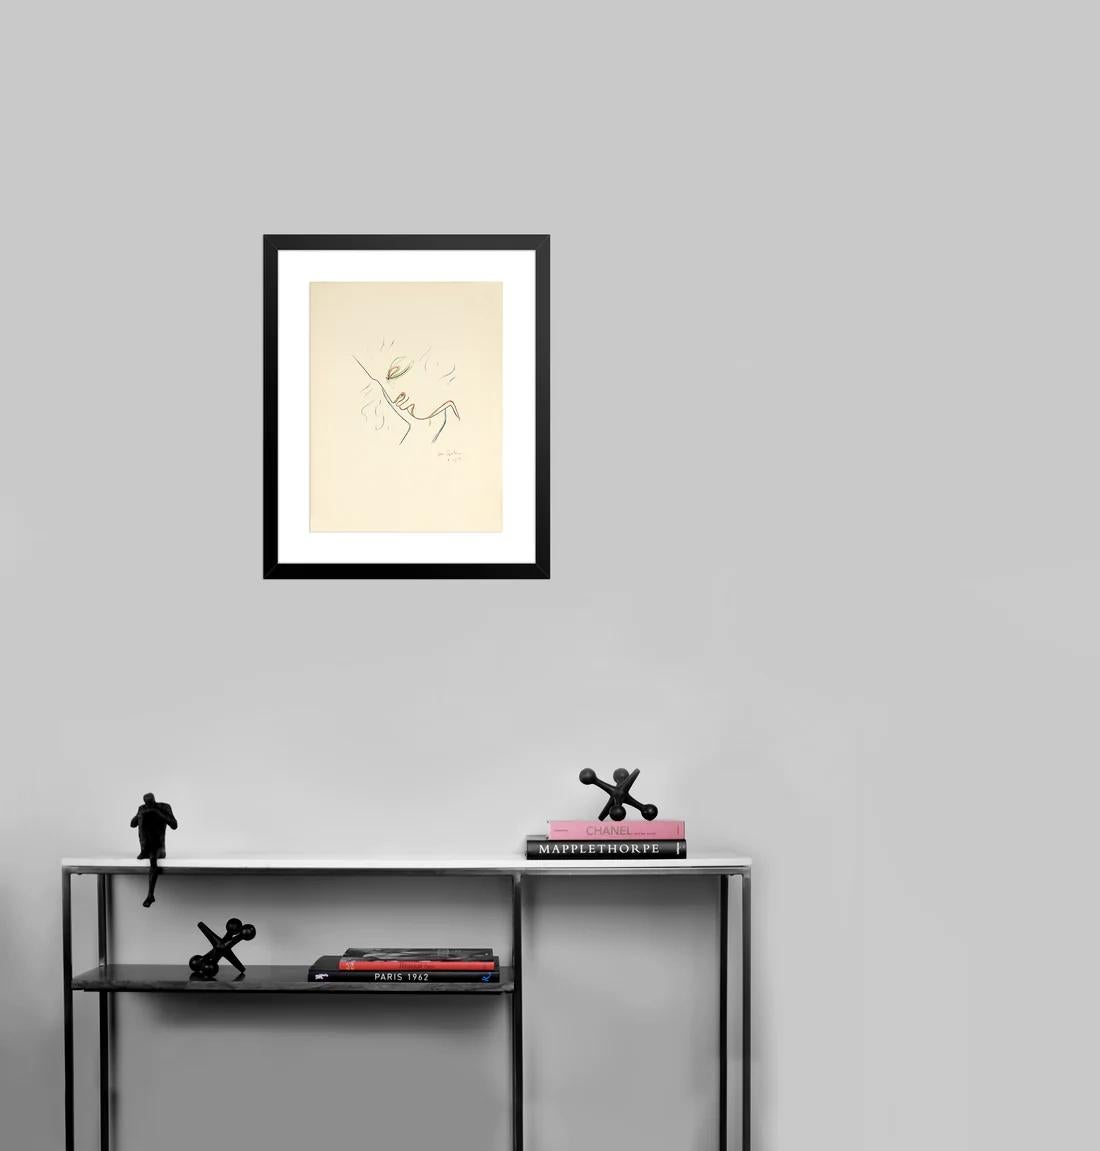 Artiste : Jean Cocteau

Médium : Lithographie originale, 1956 / 1975

Dimensions : 19.5 x 25.5 in, 49.5 x 64.8 cm

Papier Arches - Excellent état A

Cette lithographie originale est issue du portfolio illustré : 